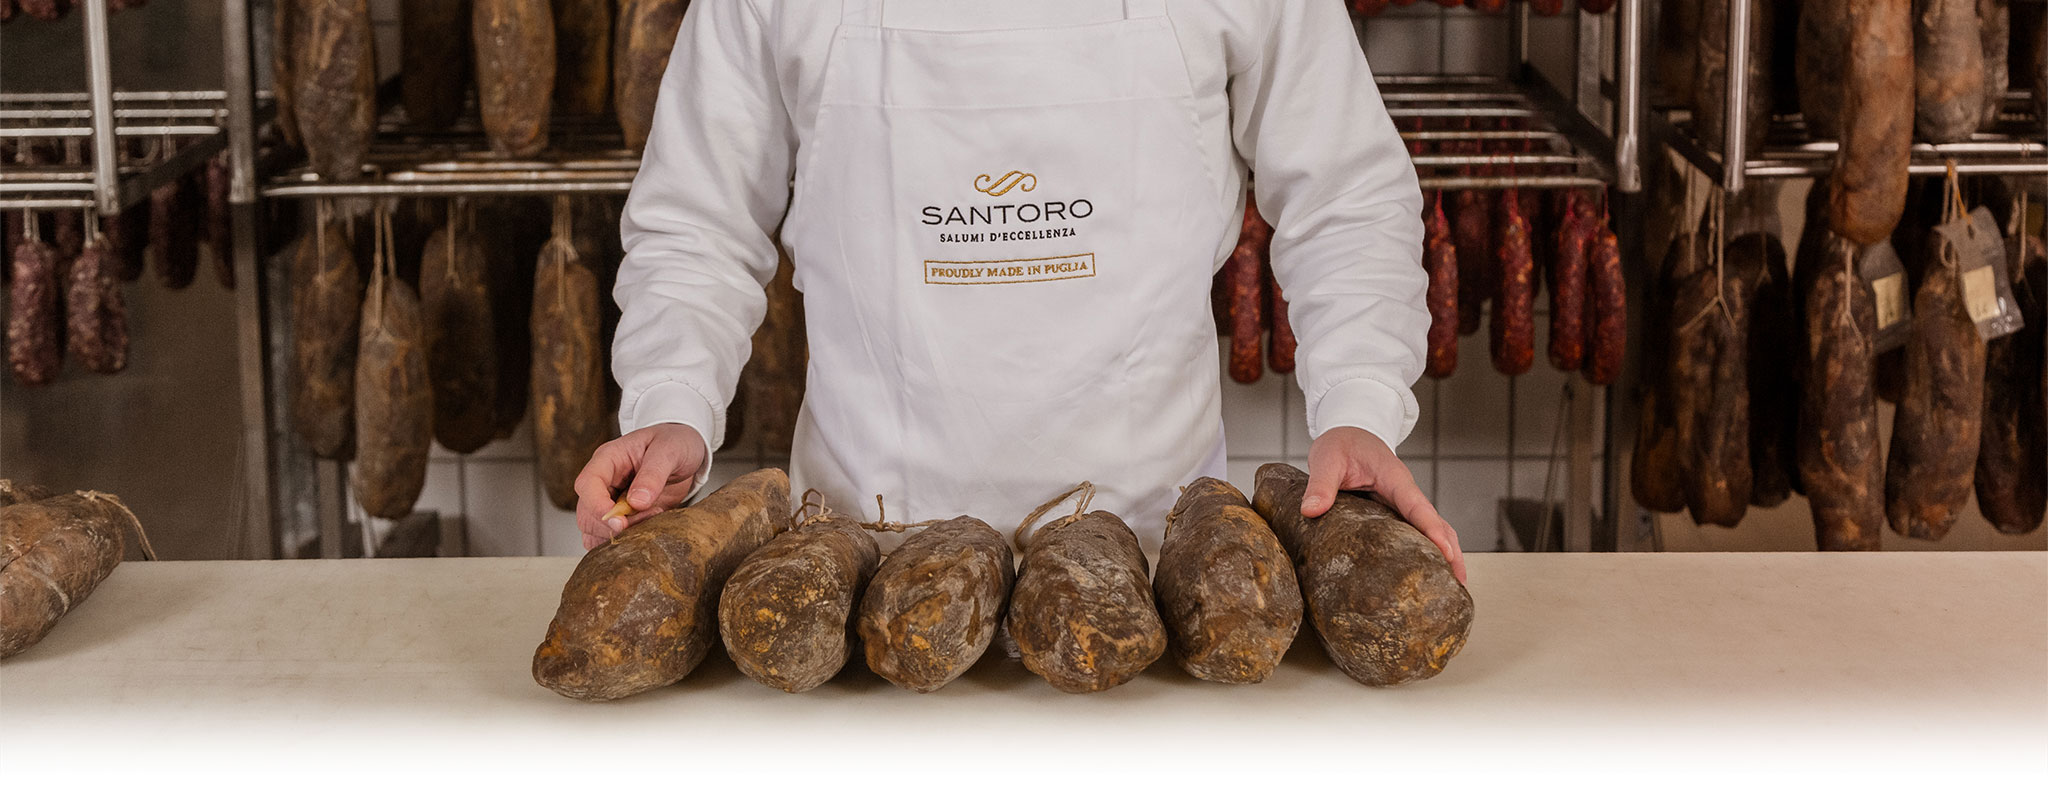 Salumificio Santoro controller showing the purchasable salami